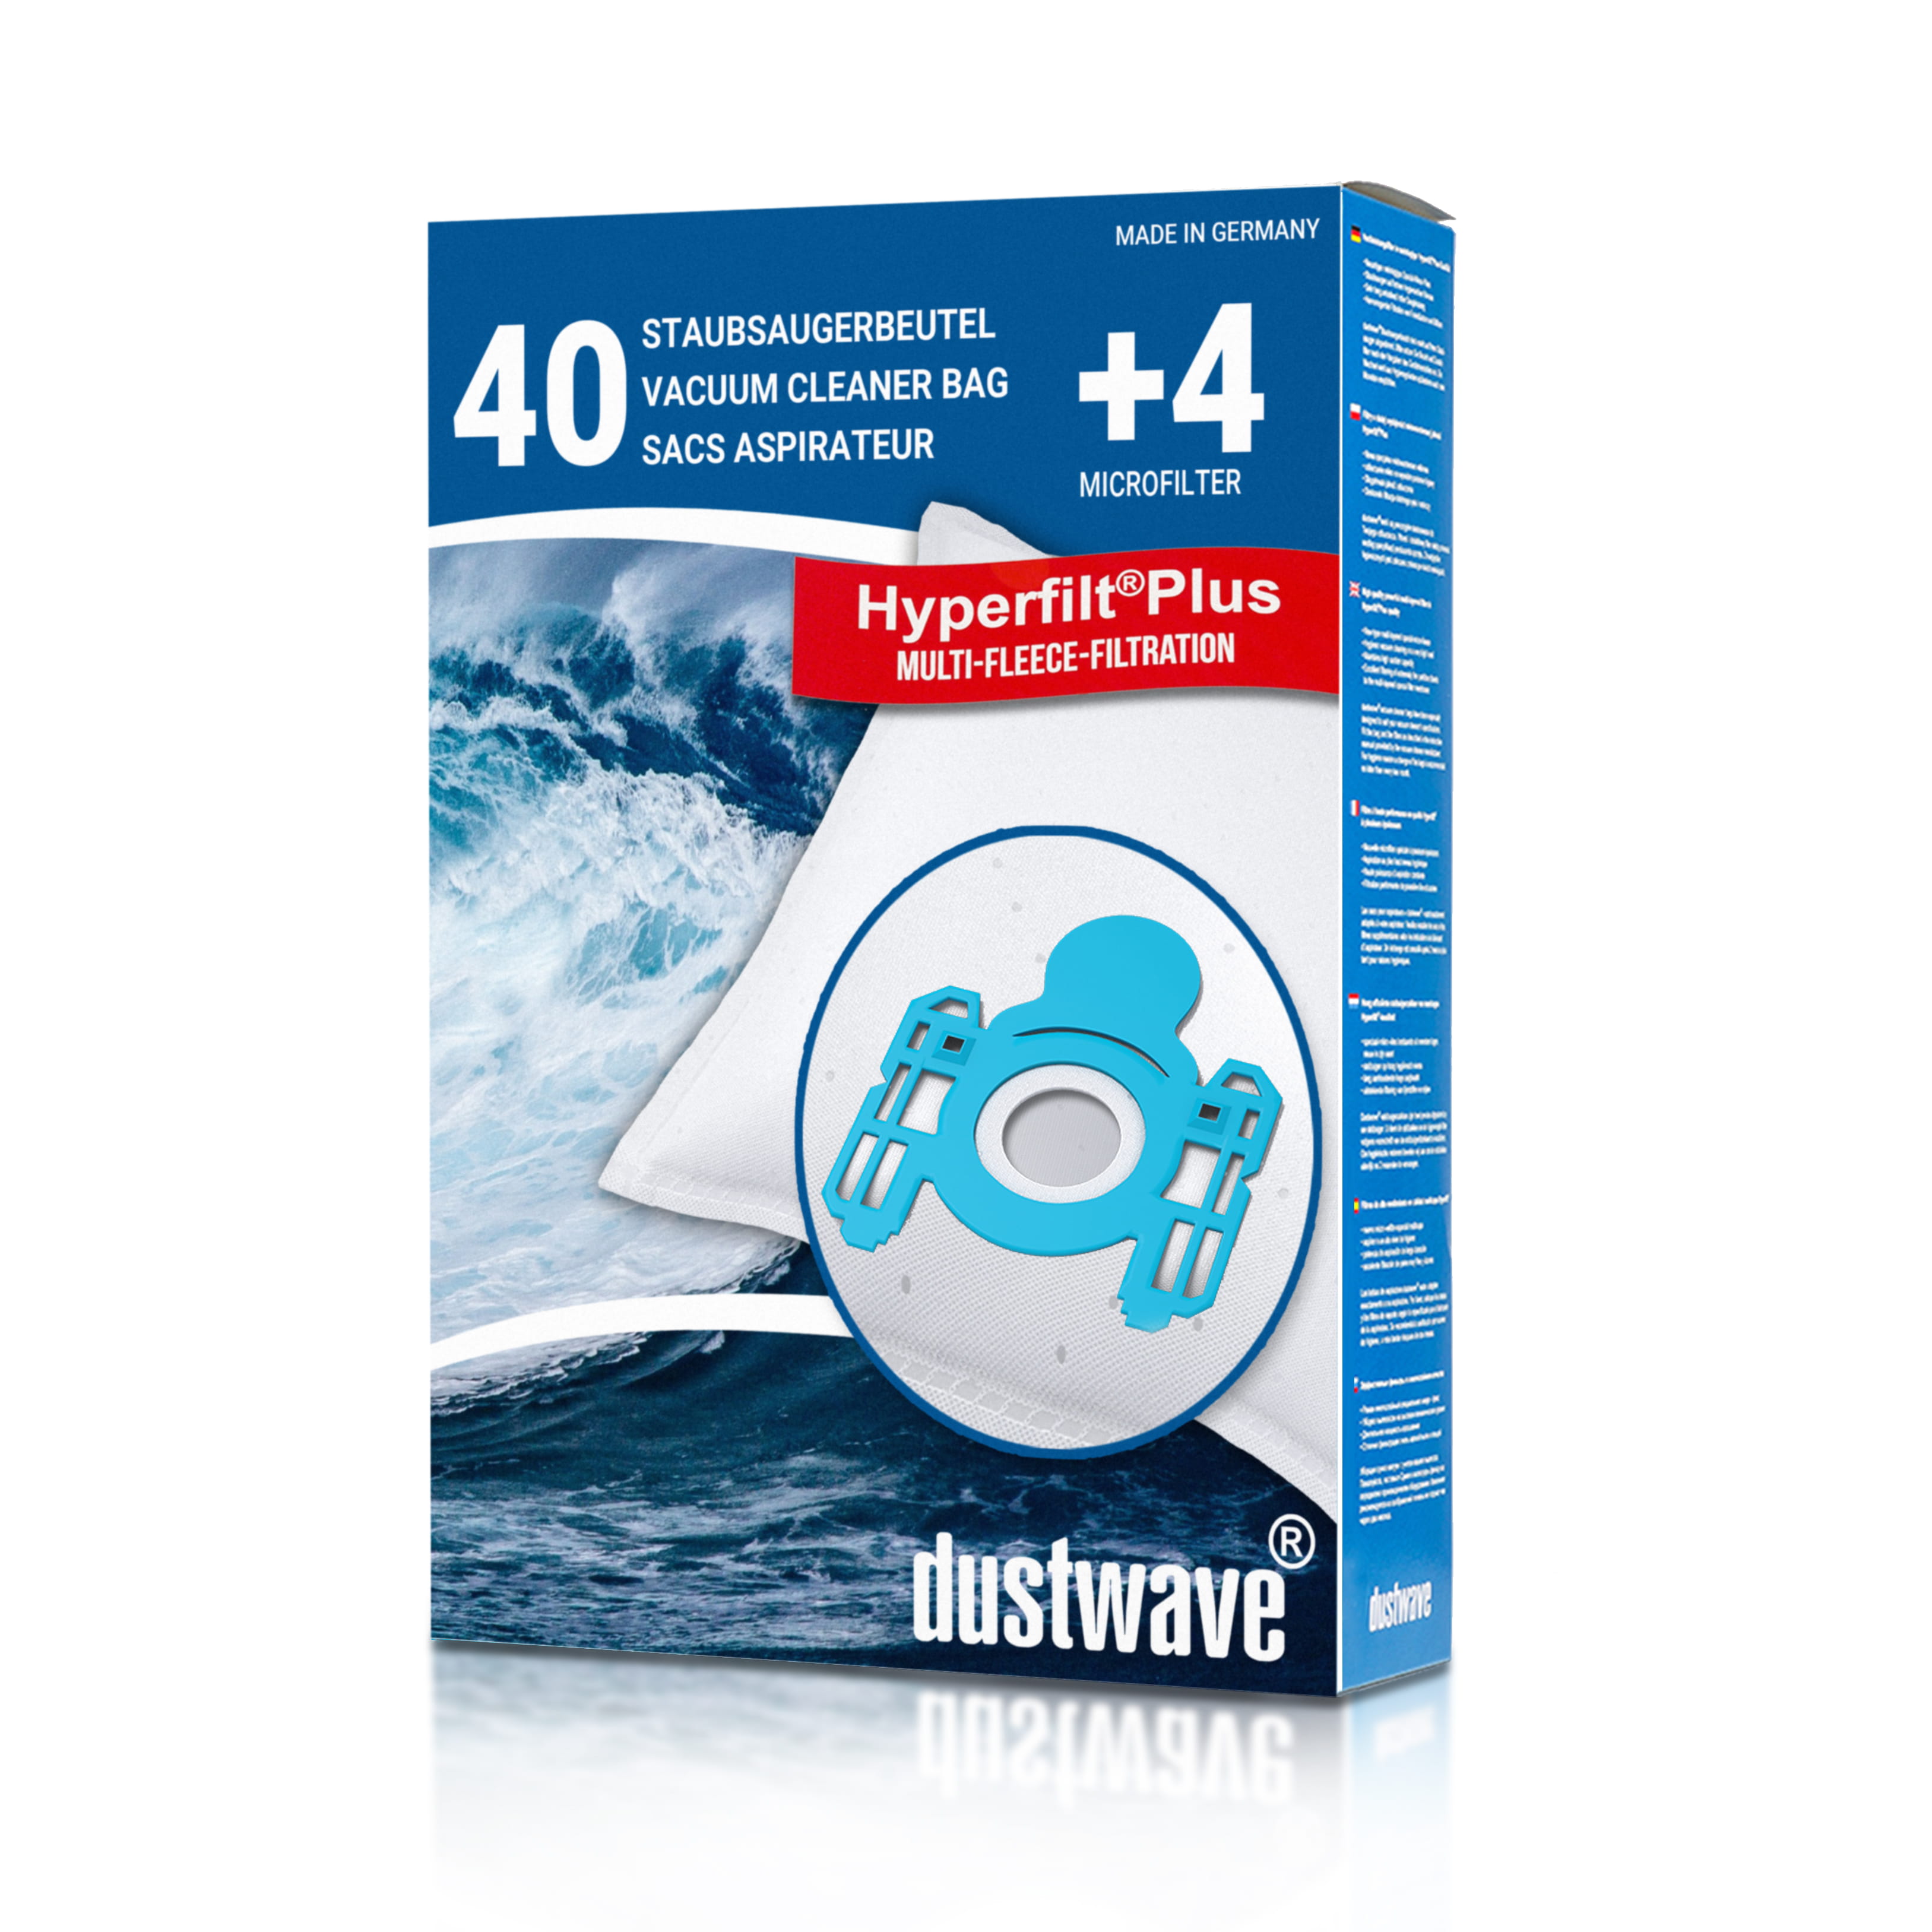 Dustwave® 40 Staubsaugerbeutel für AEG ACE 4122 PB 61 EKW01 - hocheffizient mit Hygieneverschluss - Made in Germany